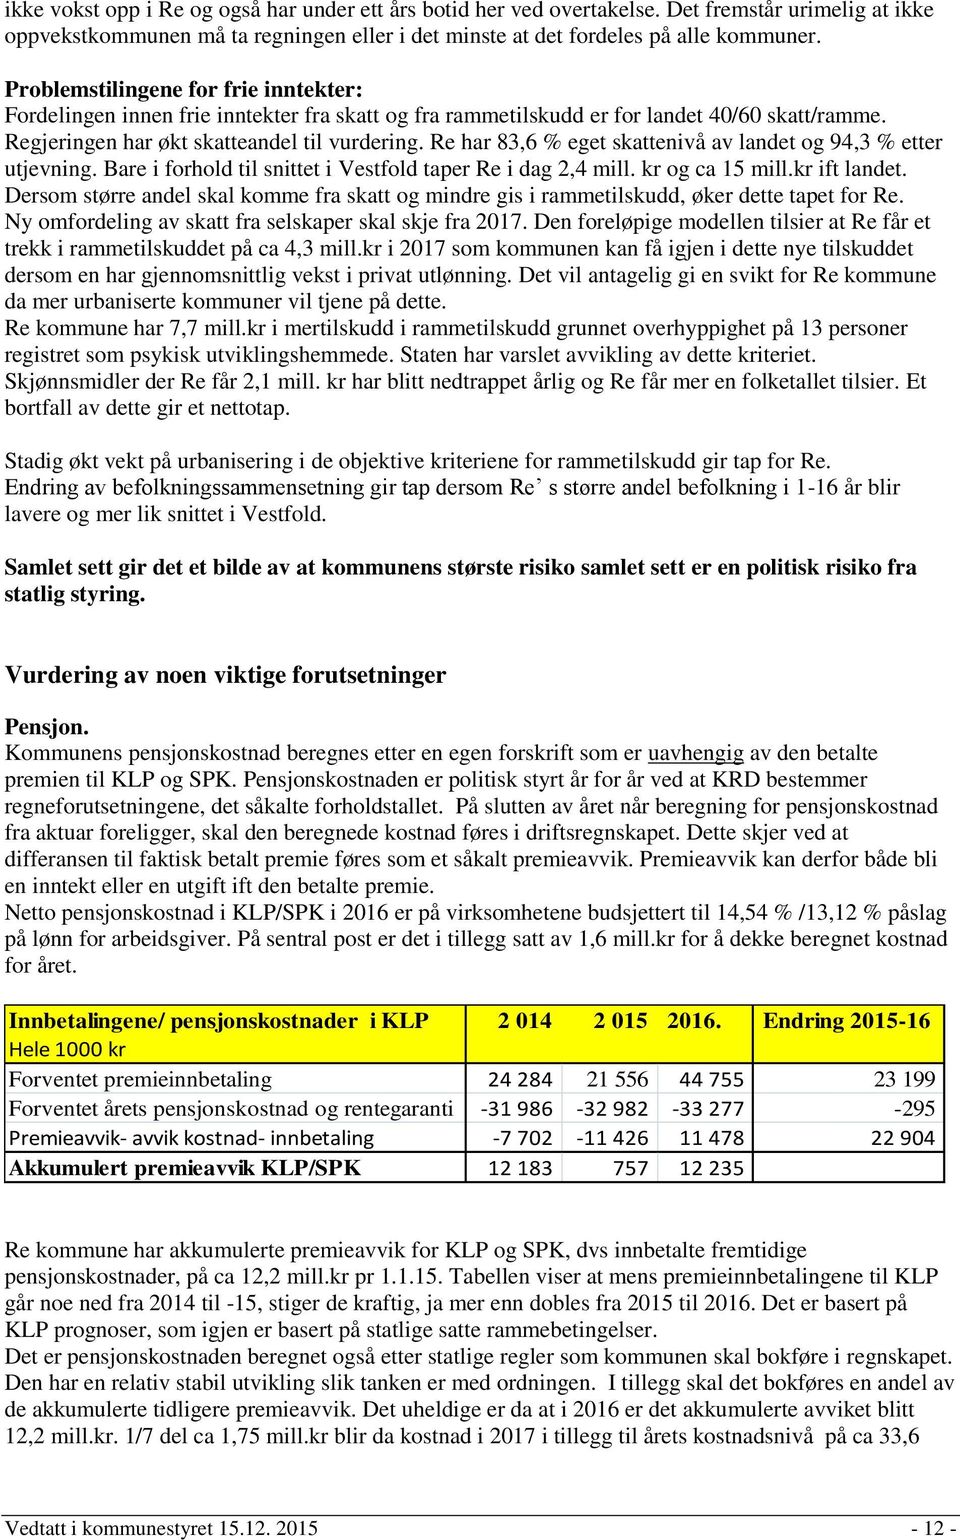 Re har 83,6 % eget skattenivå av landet og 94,3 % etter utjevning. Bare i forhold til snittet i Vestfold taper Re i dag 2,4 mill. kr og ca 15 mill.kr ift landet.